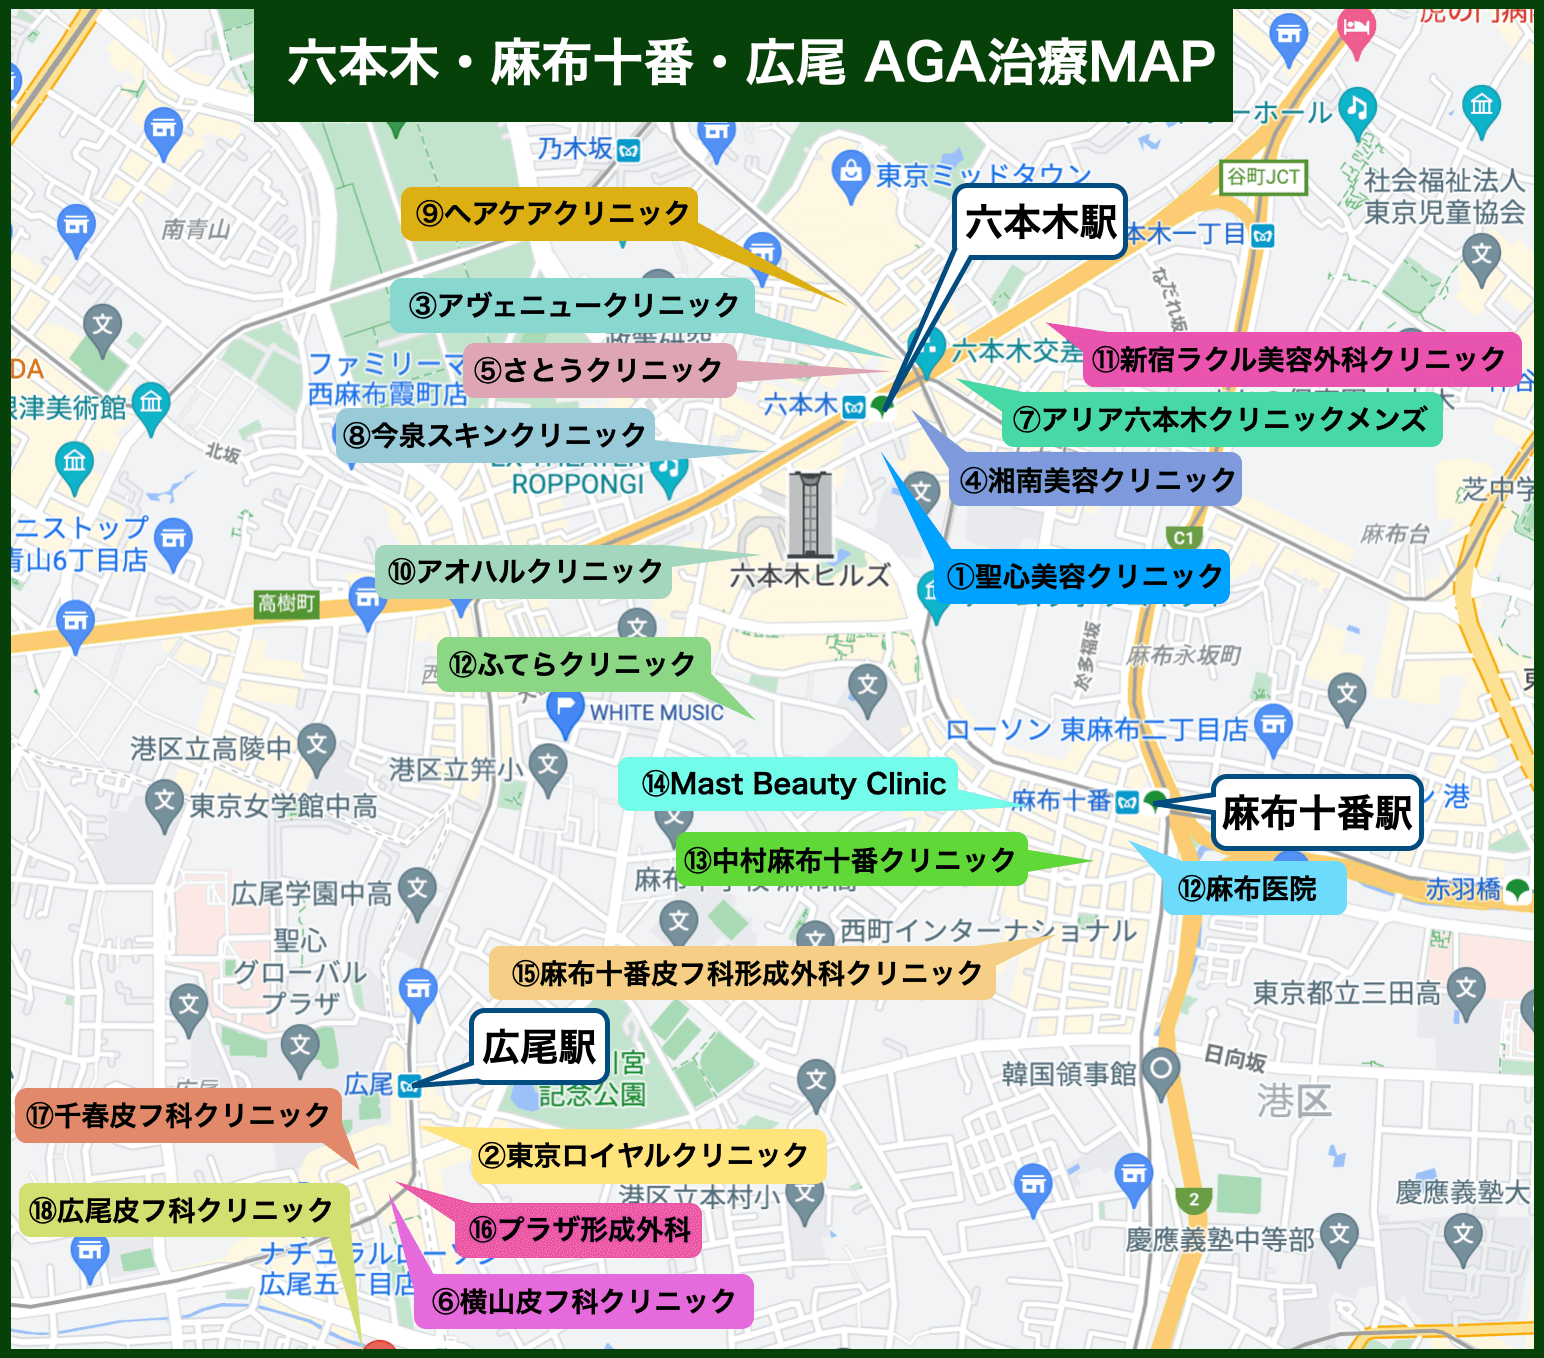 六本木・麻布十番・広尾 AGA治療MAP